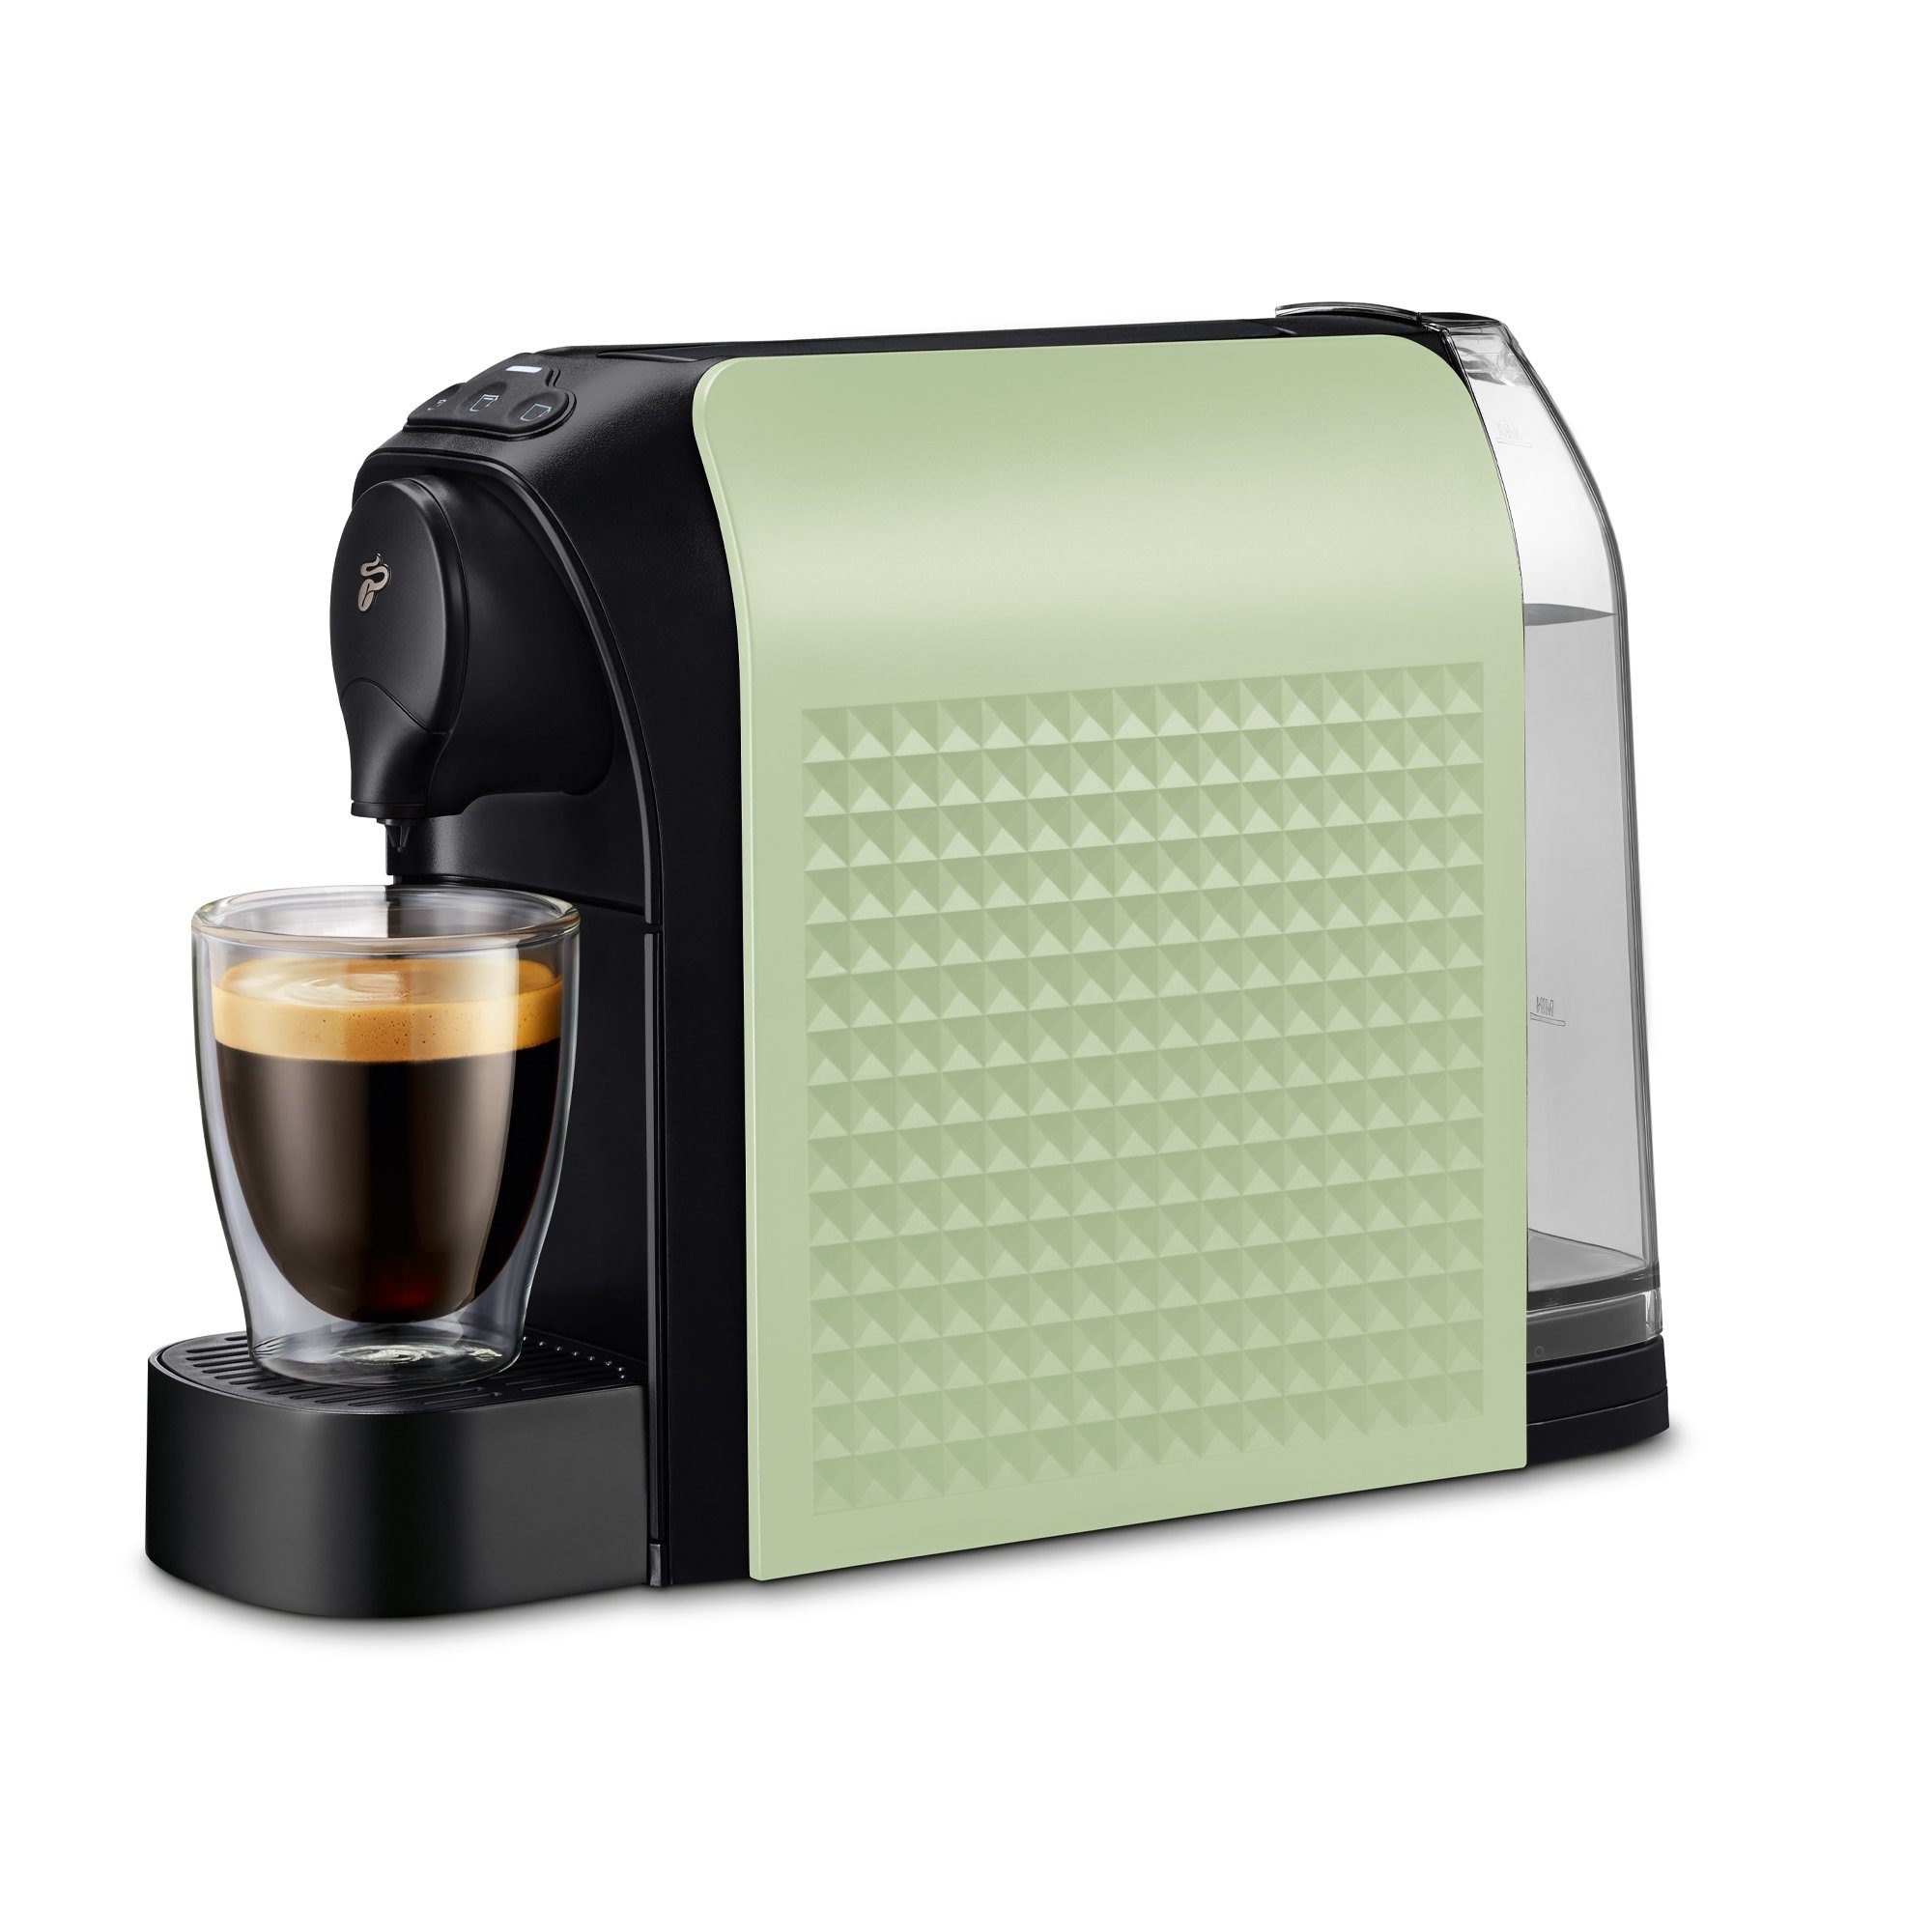 Tchibo Kapselmaschine Cafissimo easy, Perfekter Espresso, Caffè Crema und Kaffee aus einer Maschine